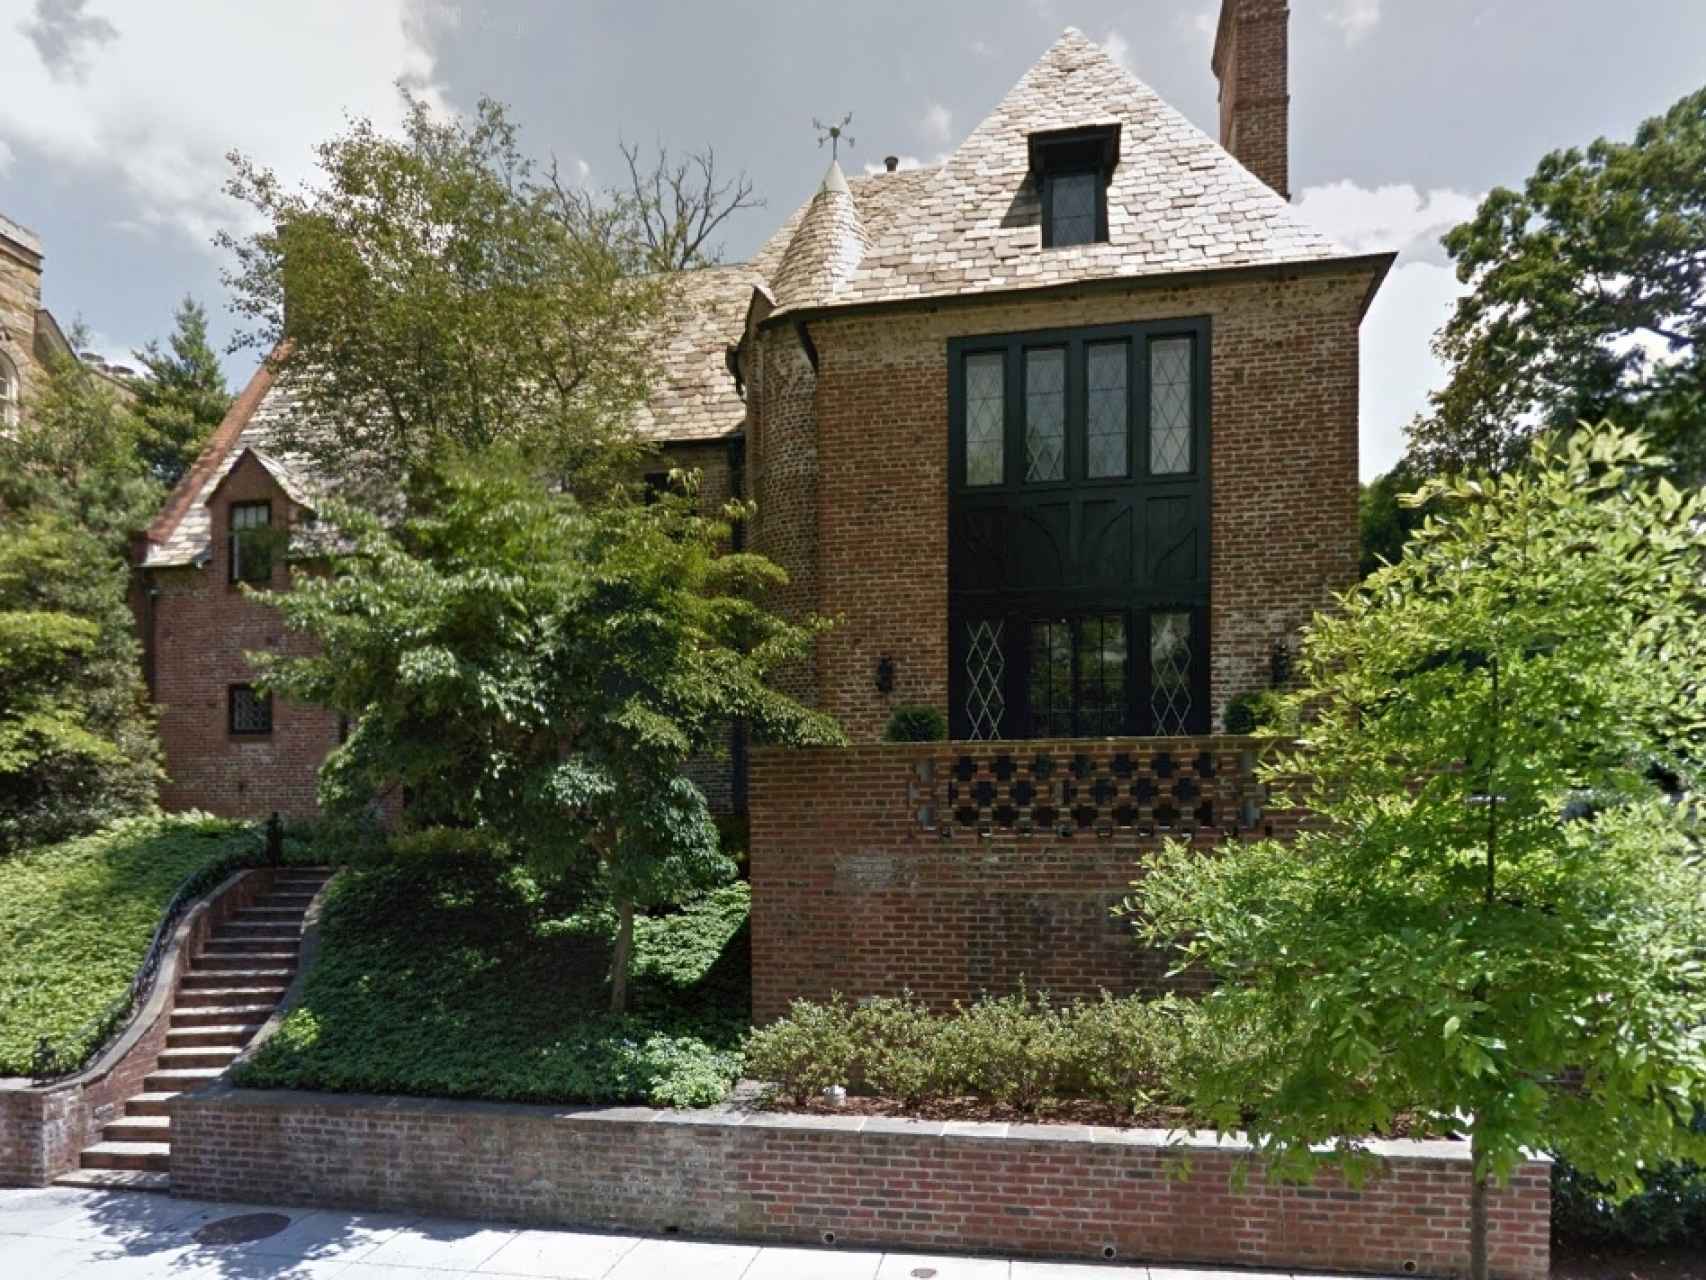 Los Obama alquilarán esta mansión tras dejar la Casa Blanca, según la prensa local.